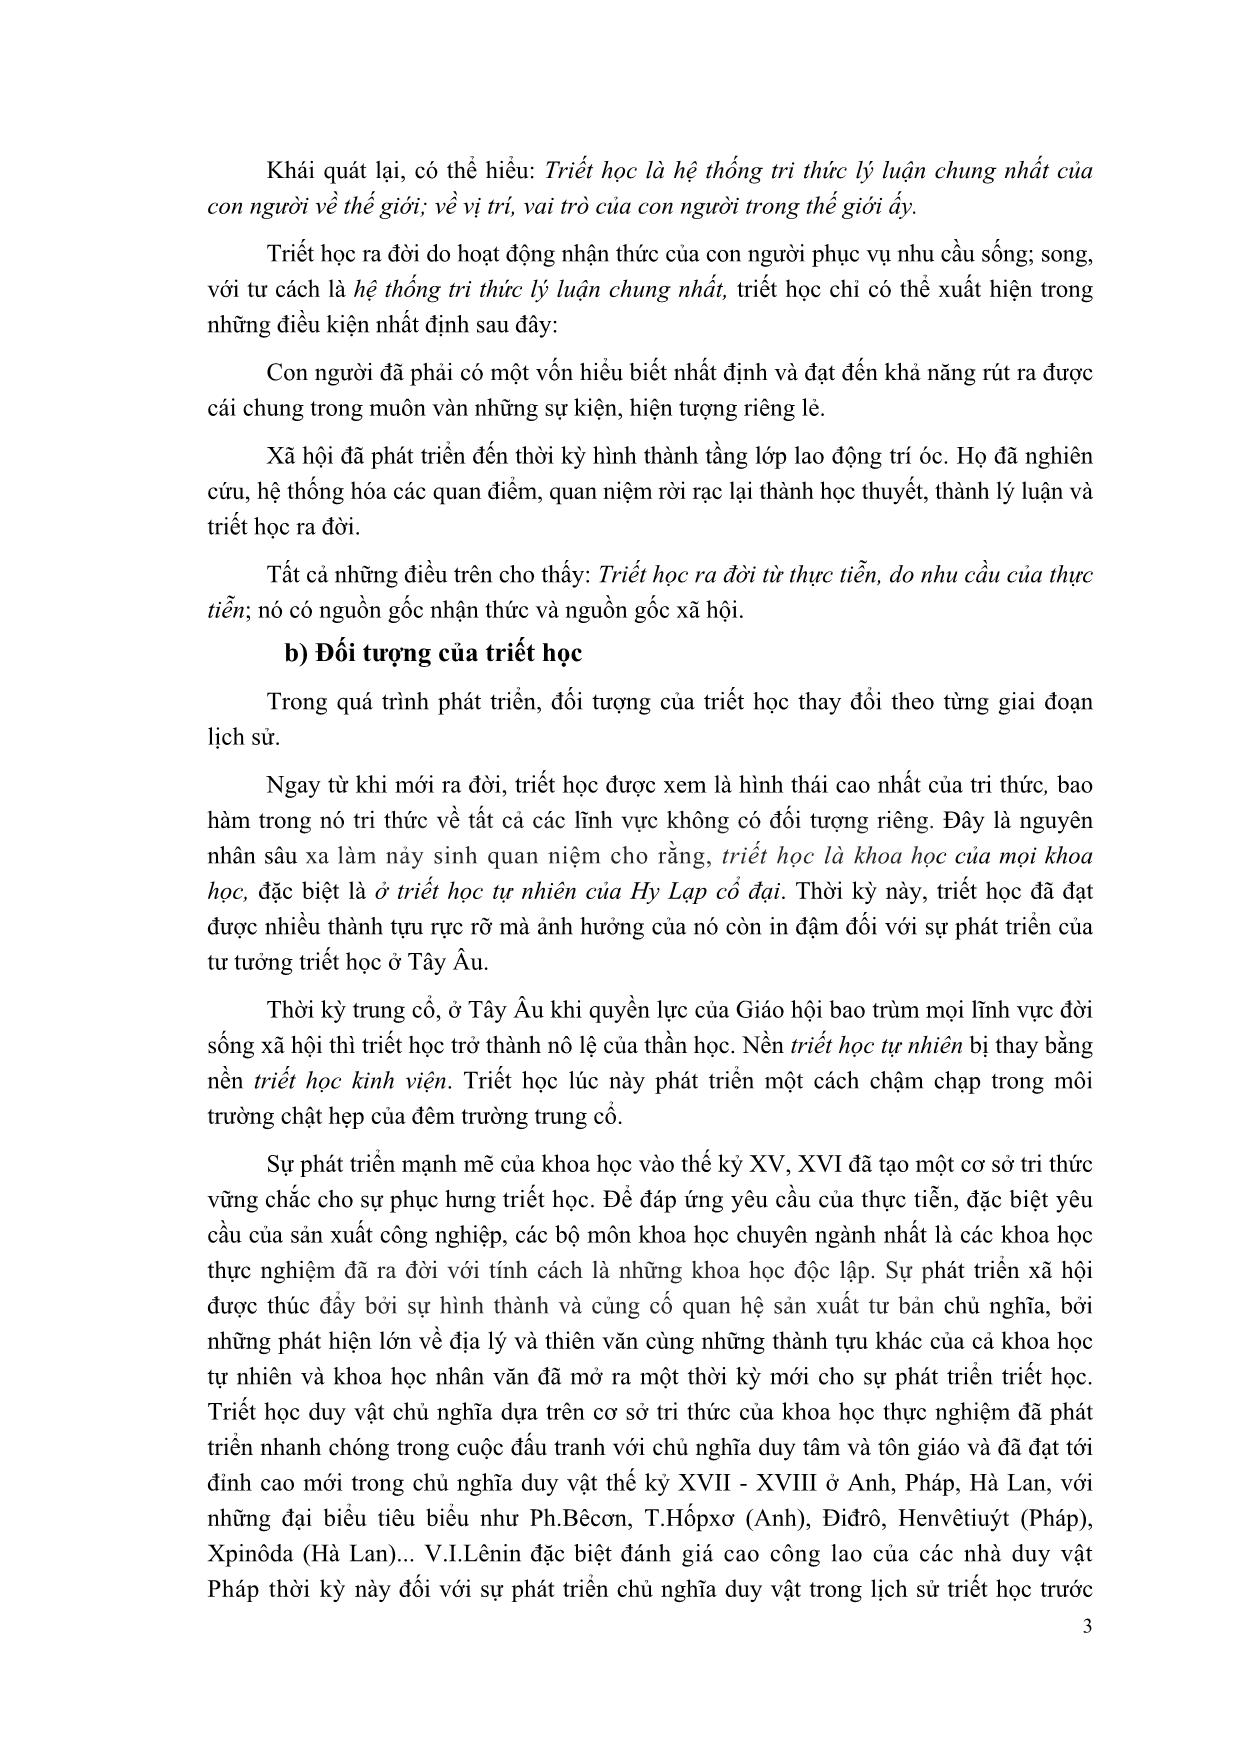 Giáo trình Triết học Mác-Lênin (Mới) trang 4